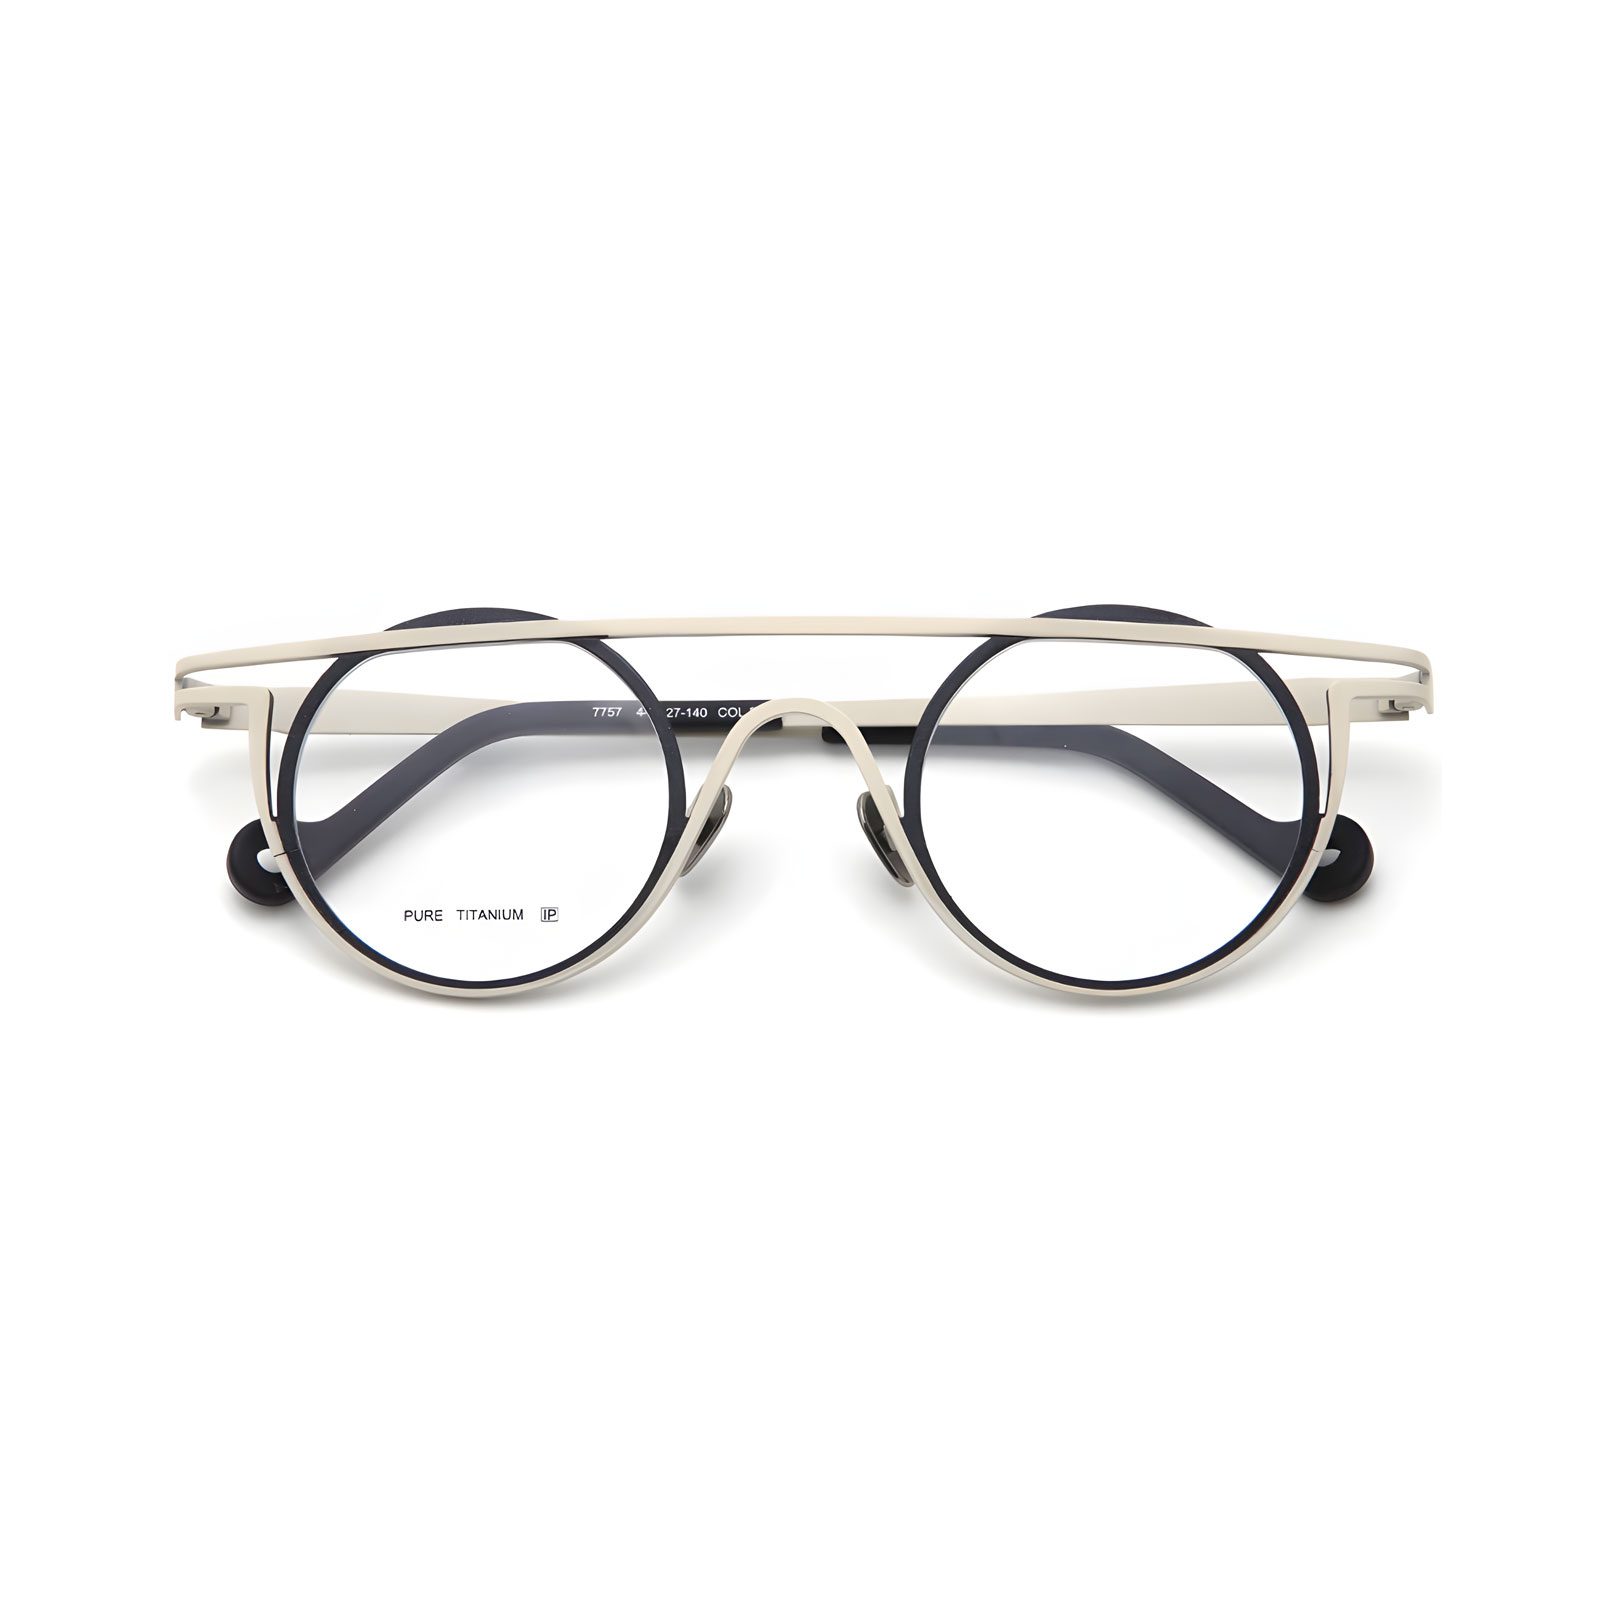 REACT Fashion Forward Unisex Titanium Round Eyeglass Frames